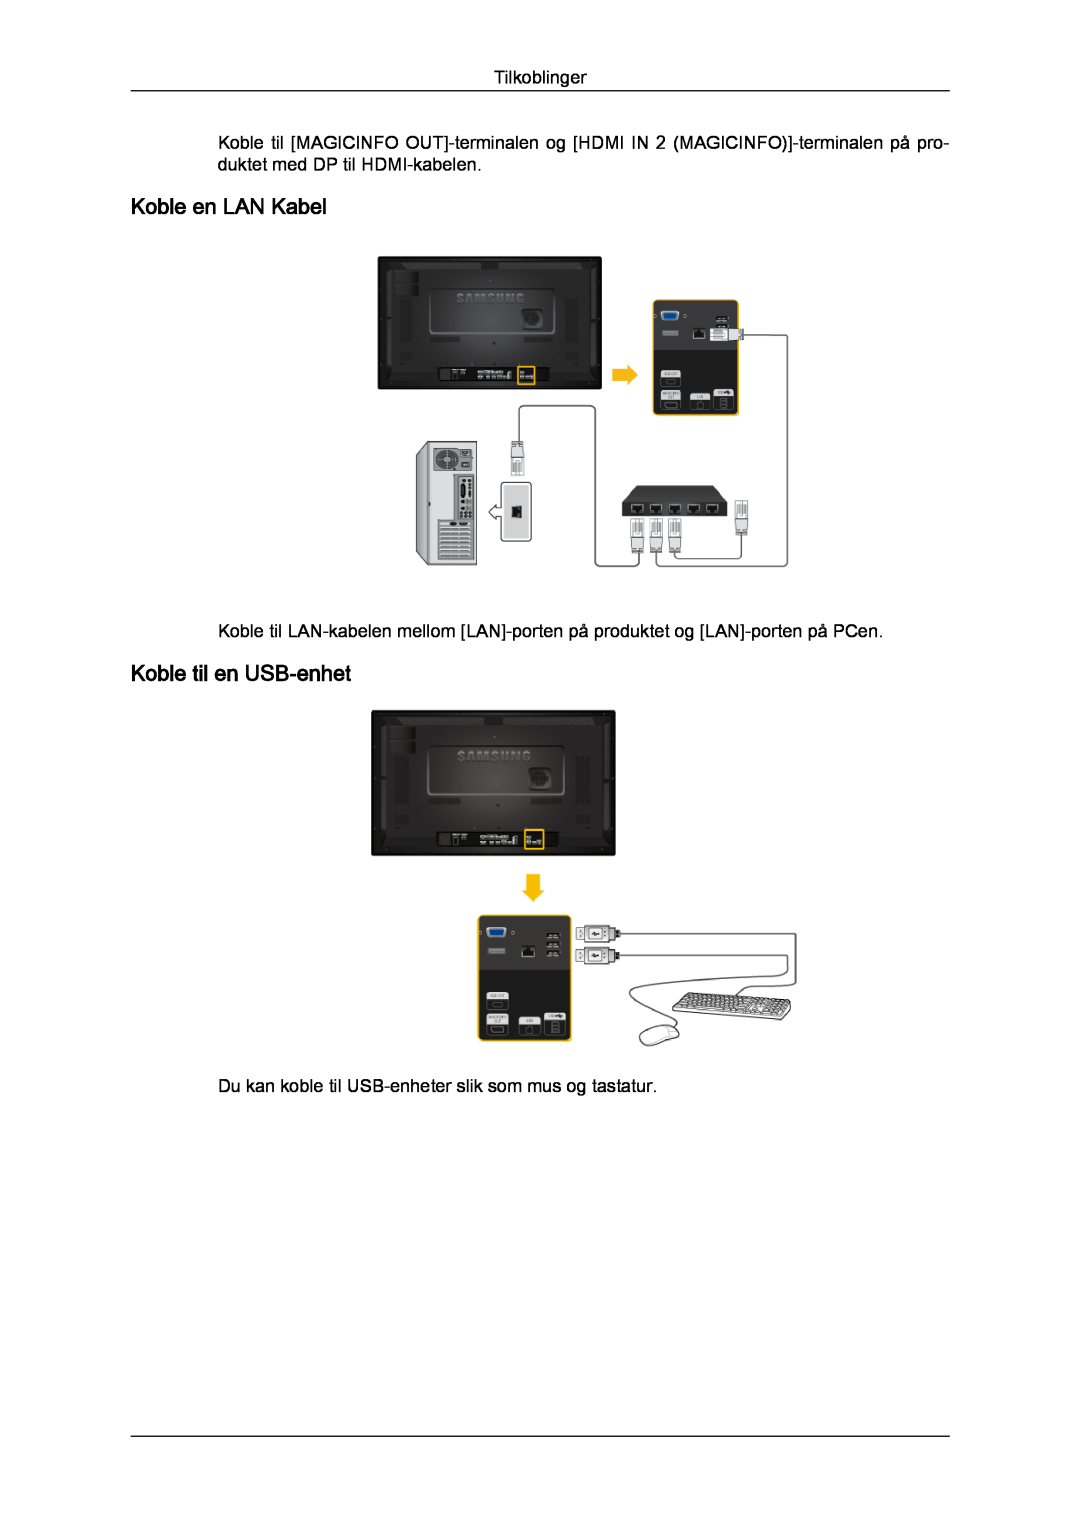 Samsung LH32CRSMBC/EN, LH32CRTMBC/EN, LH32CRSMBD/EN manual Koble en LAN Kabel, Koble til en USB-enhet, Tilkoblinger 